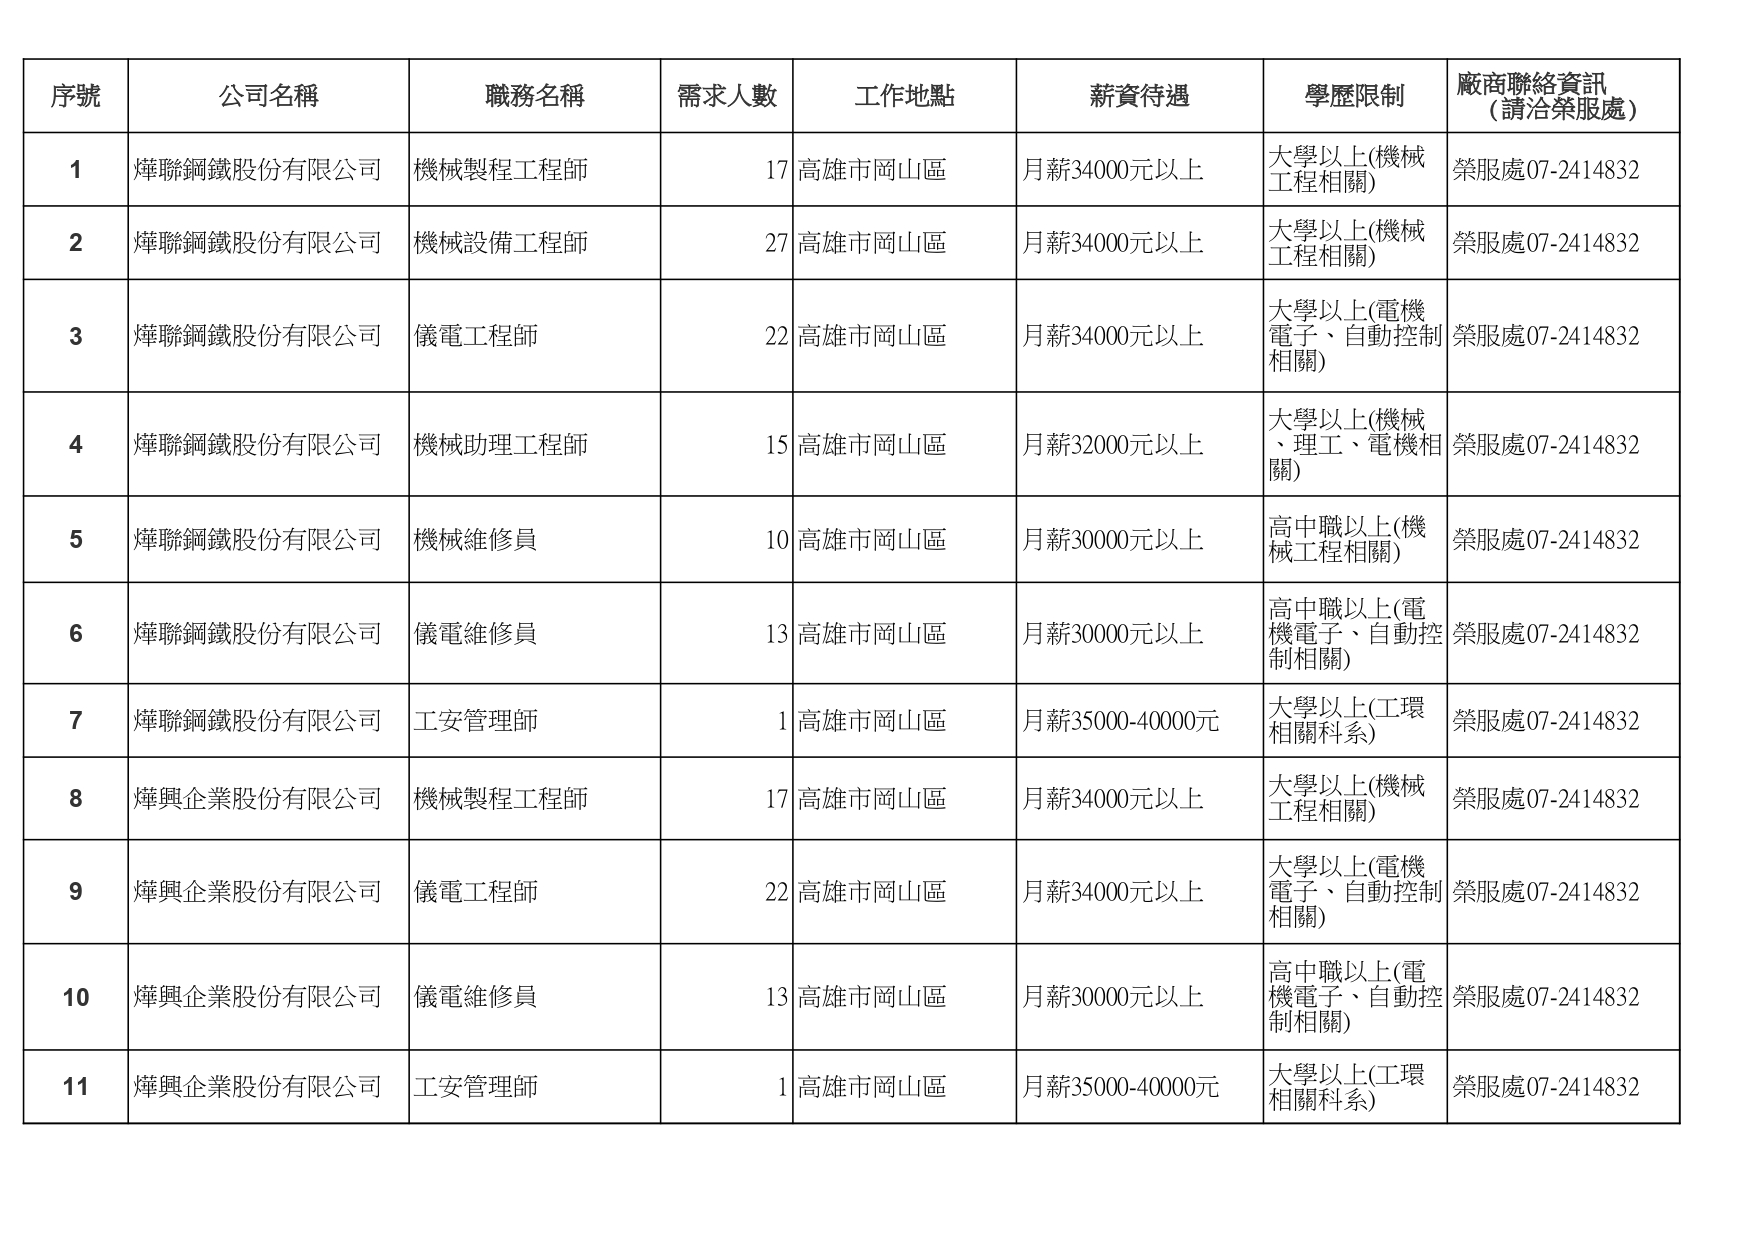 高雄榮服處-廠商職缺列表112.10.3_page-0001